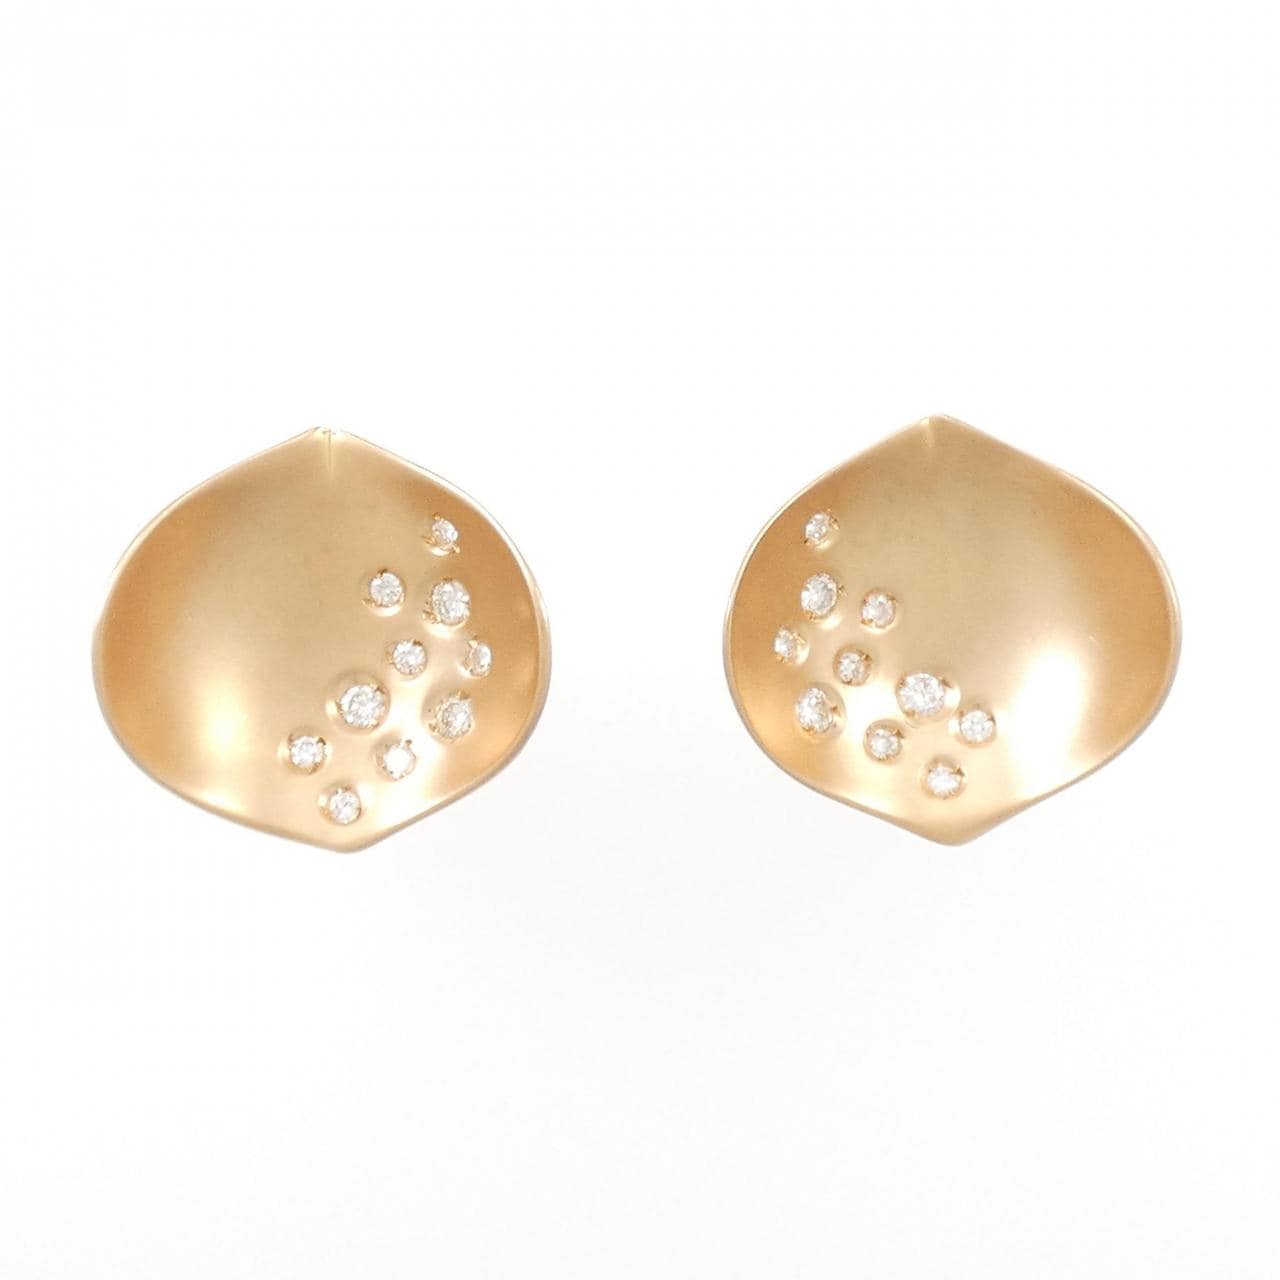 750PG Diamond earrings